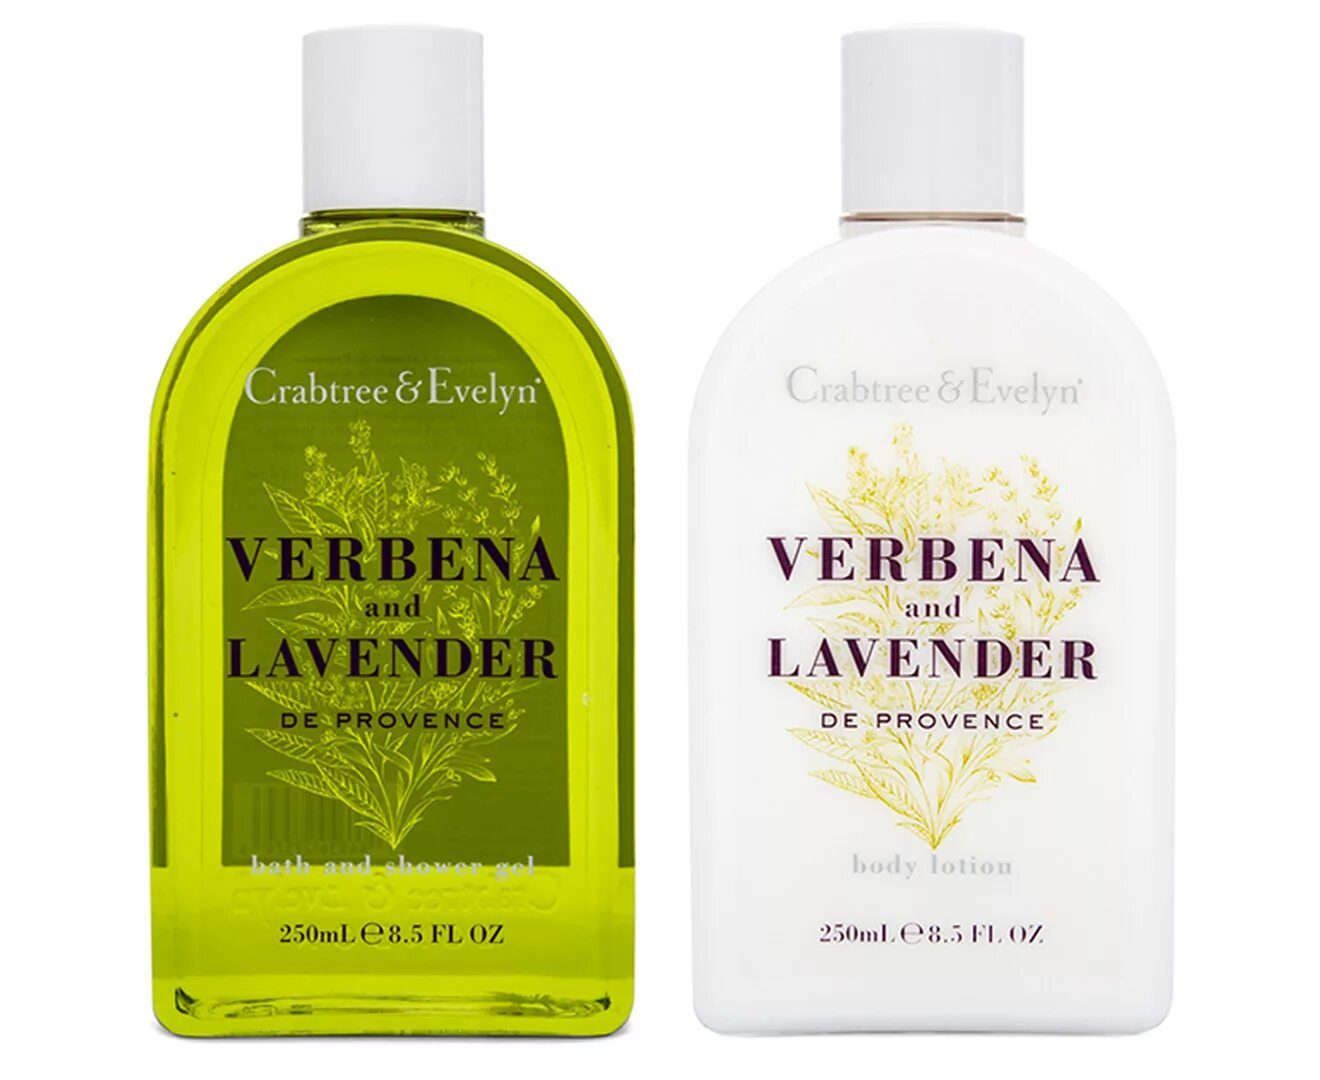 Гель вербена. Crabtree Evelyn Verbena Lavender. Crabtree & Evelyn Verbena and Lavender body Lotion (250ml). Verbena Lavender шампунь. Verbena and Lavender de Provence.